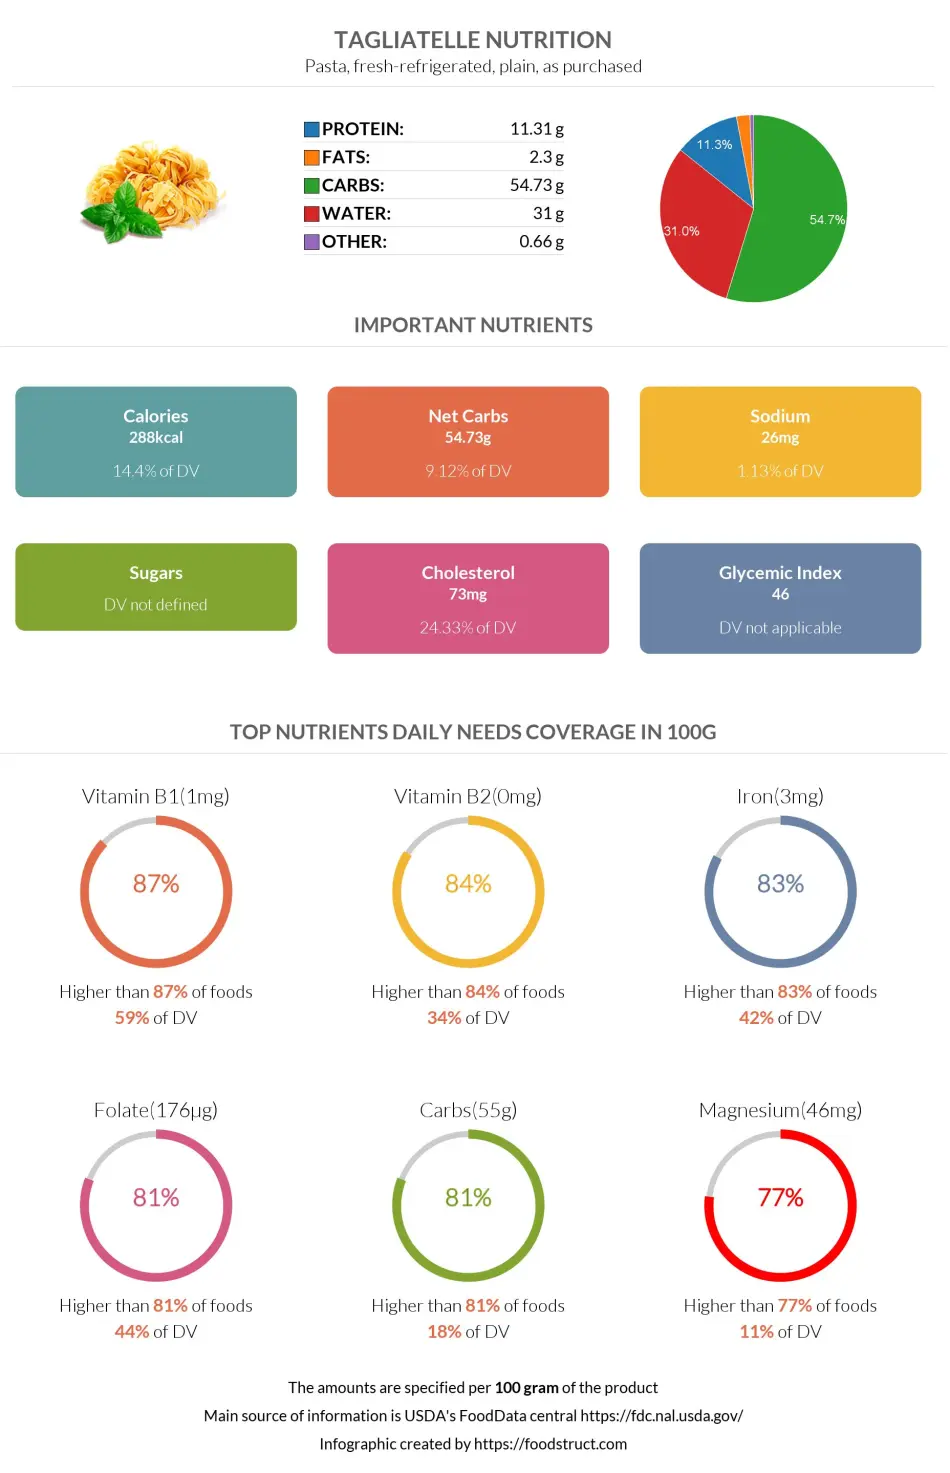 Tagliatelle nutrition infographic